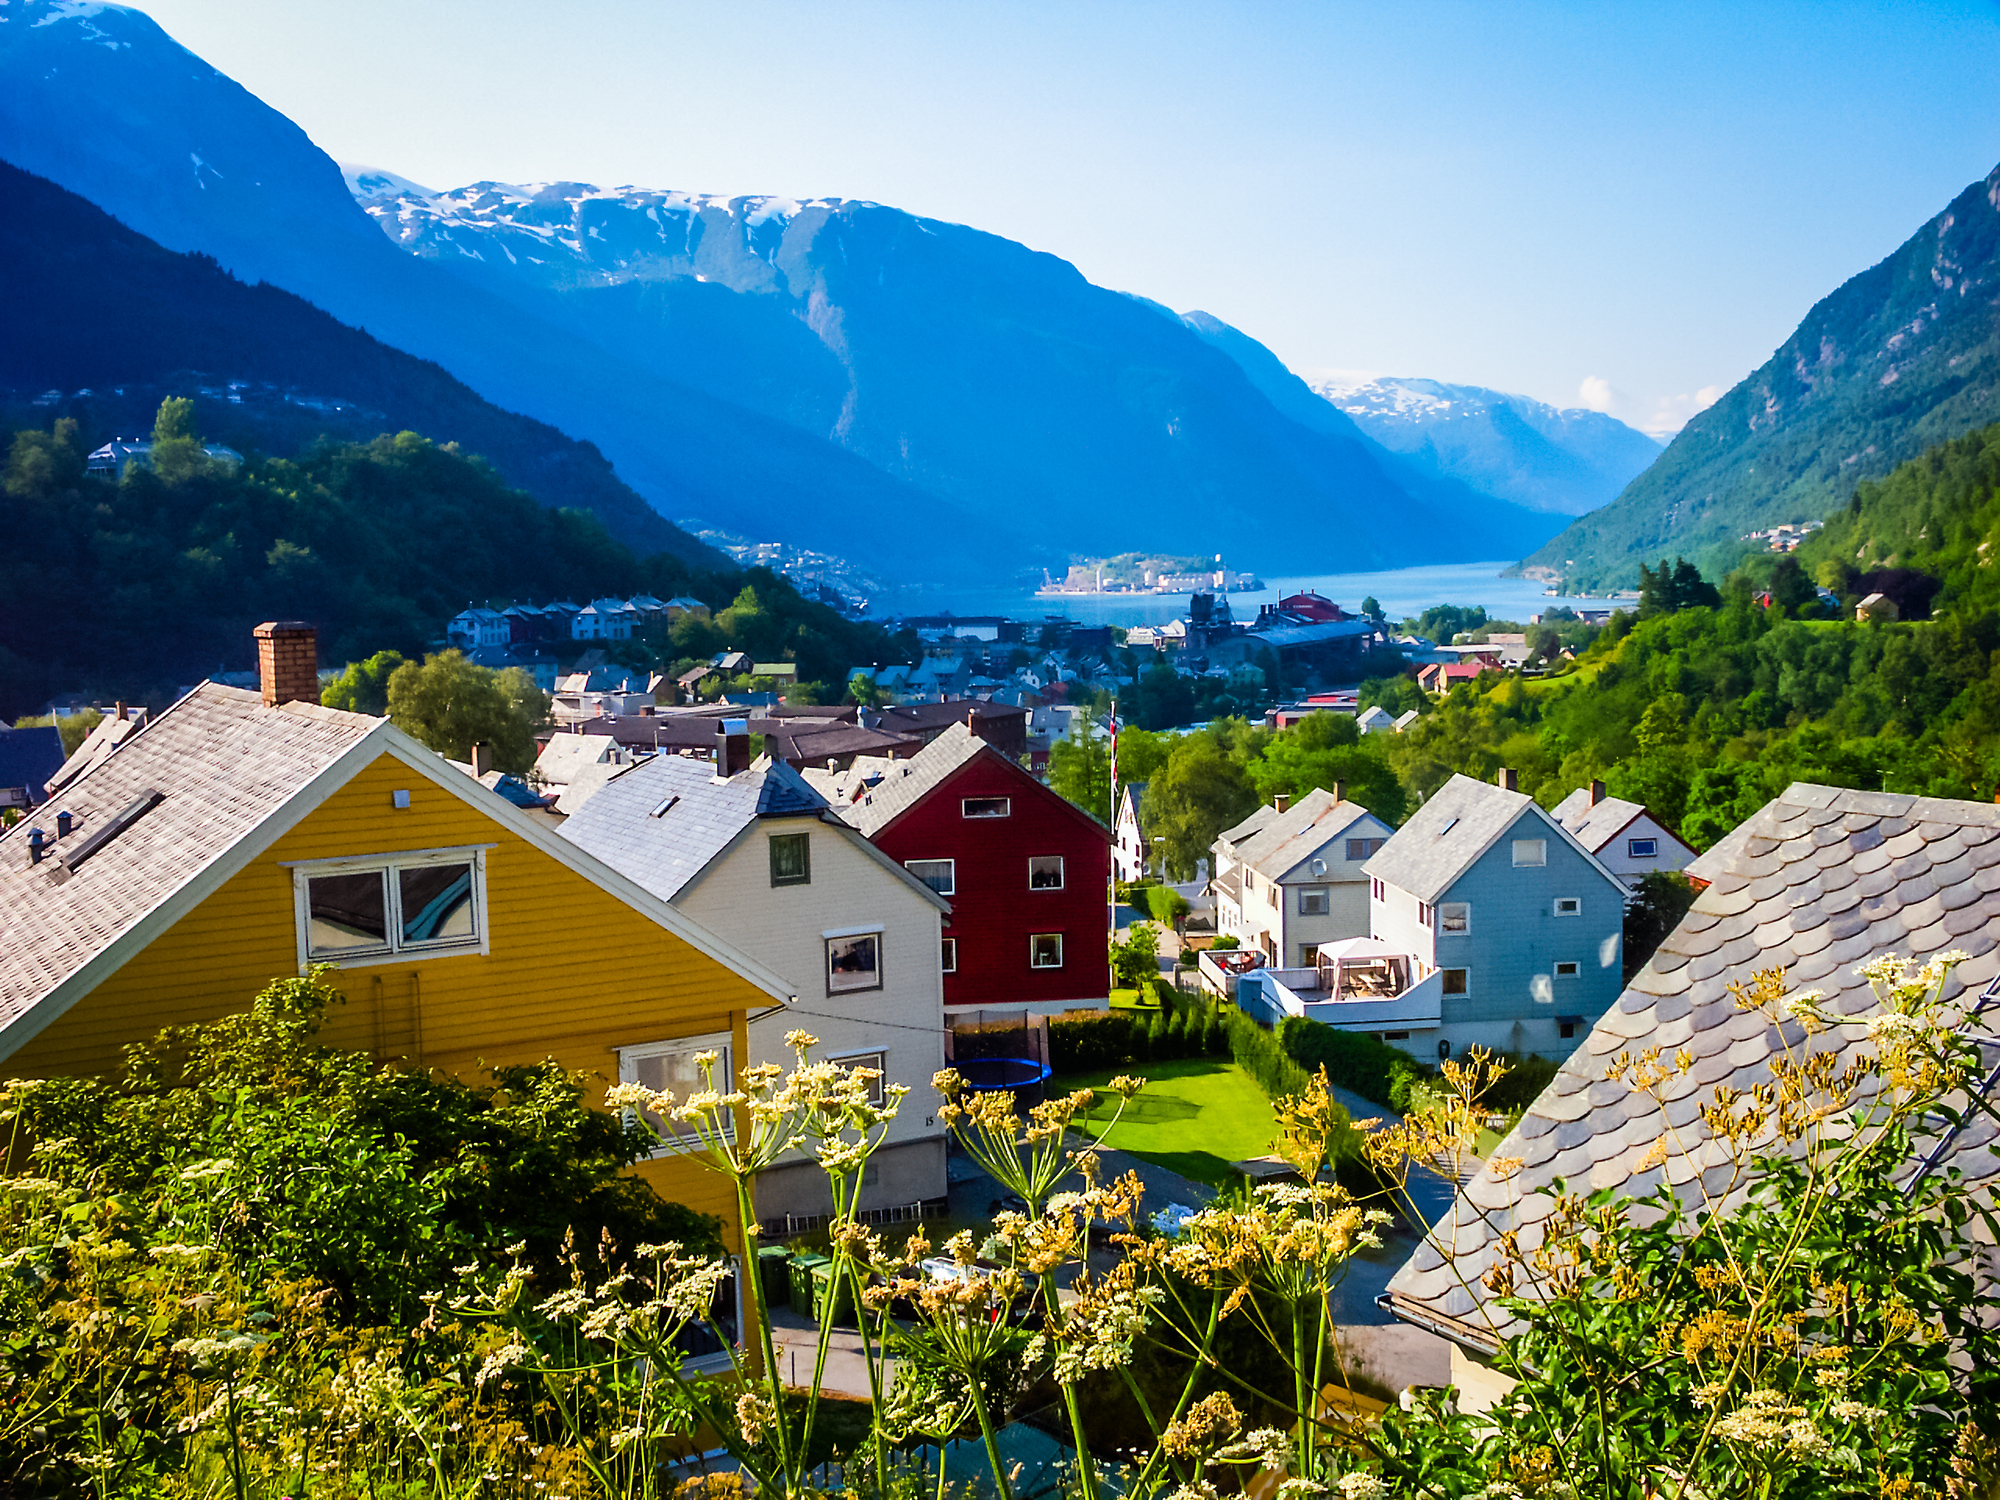 Традийційні дерев'яні будинки в Норвегії